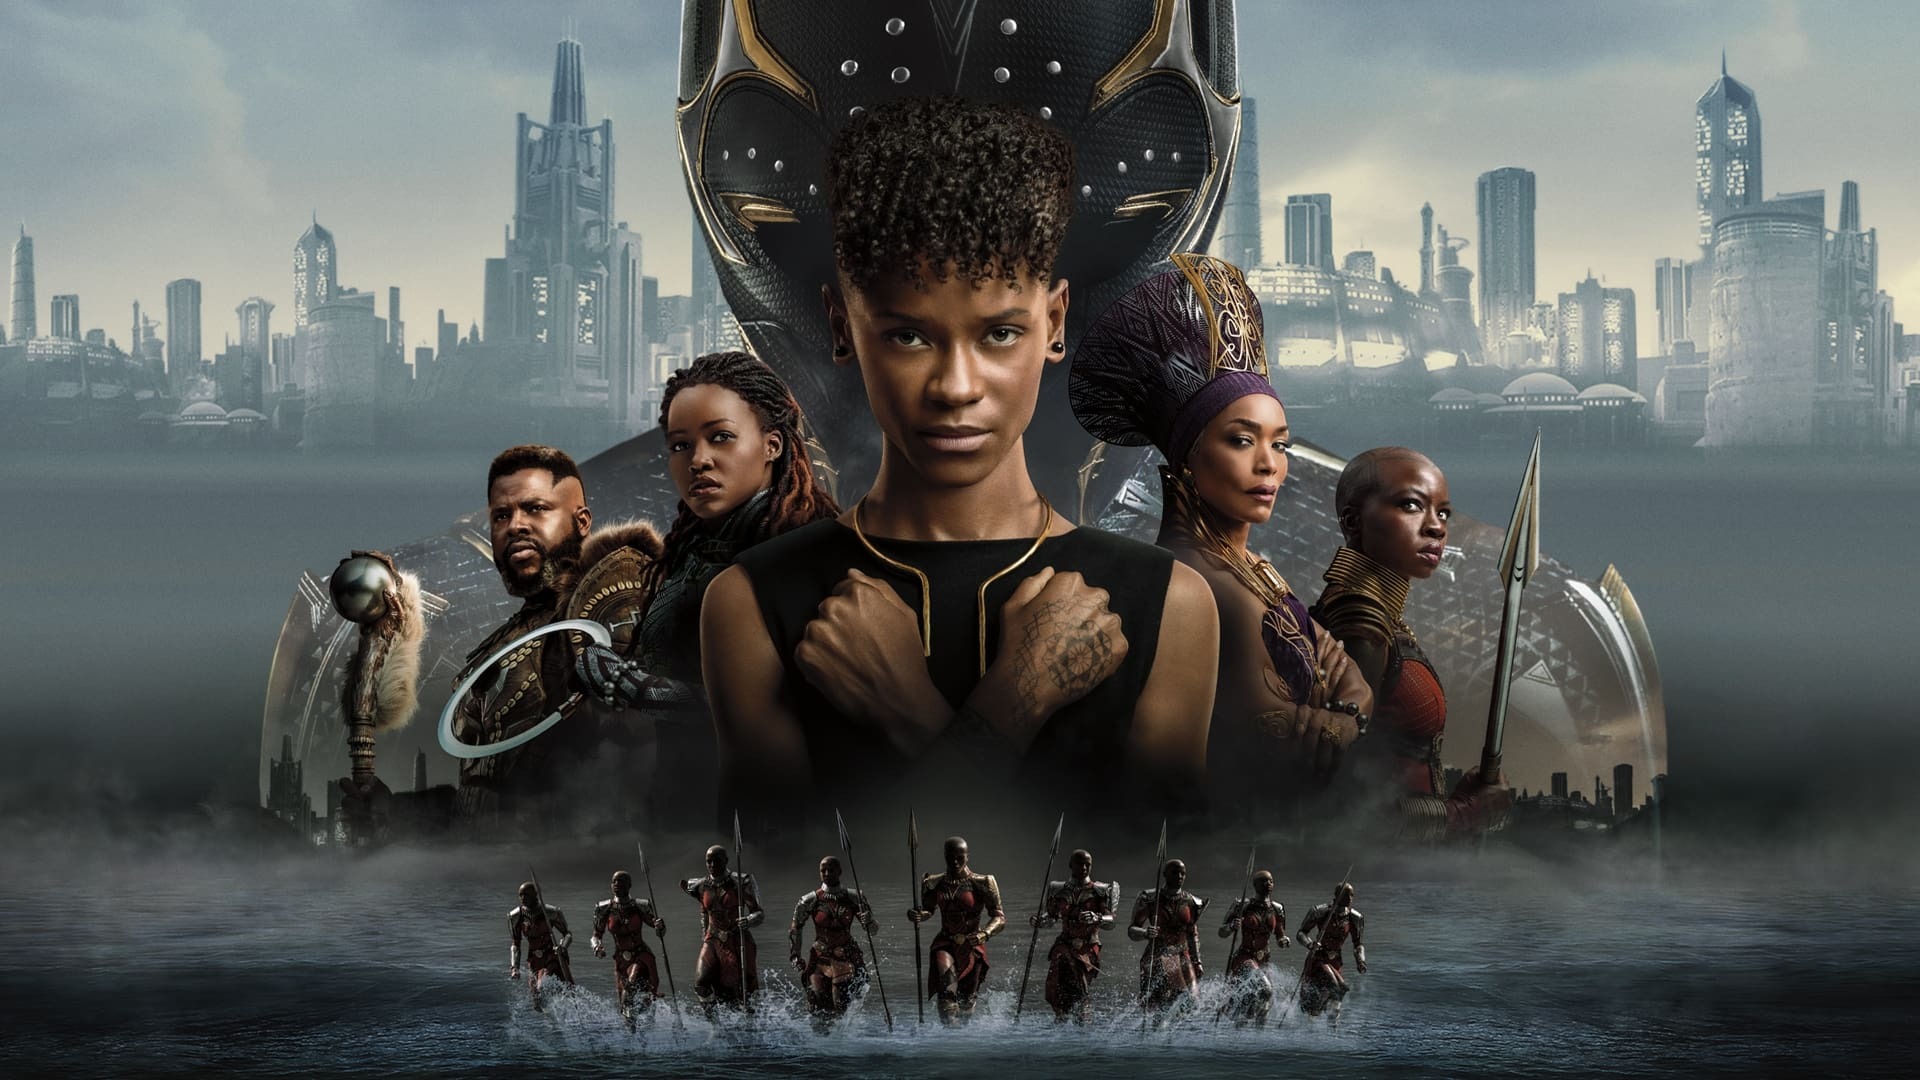 შავი პანტერა 2: ვაკანდა სამუდამოდ / Black Panther: Wakanda Forever